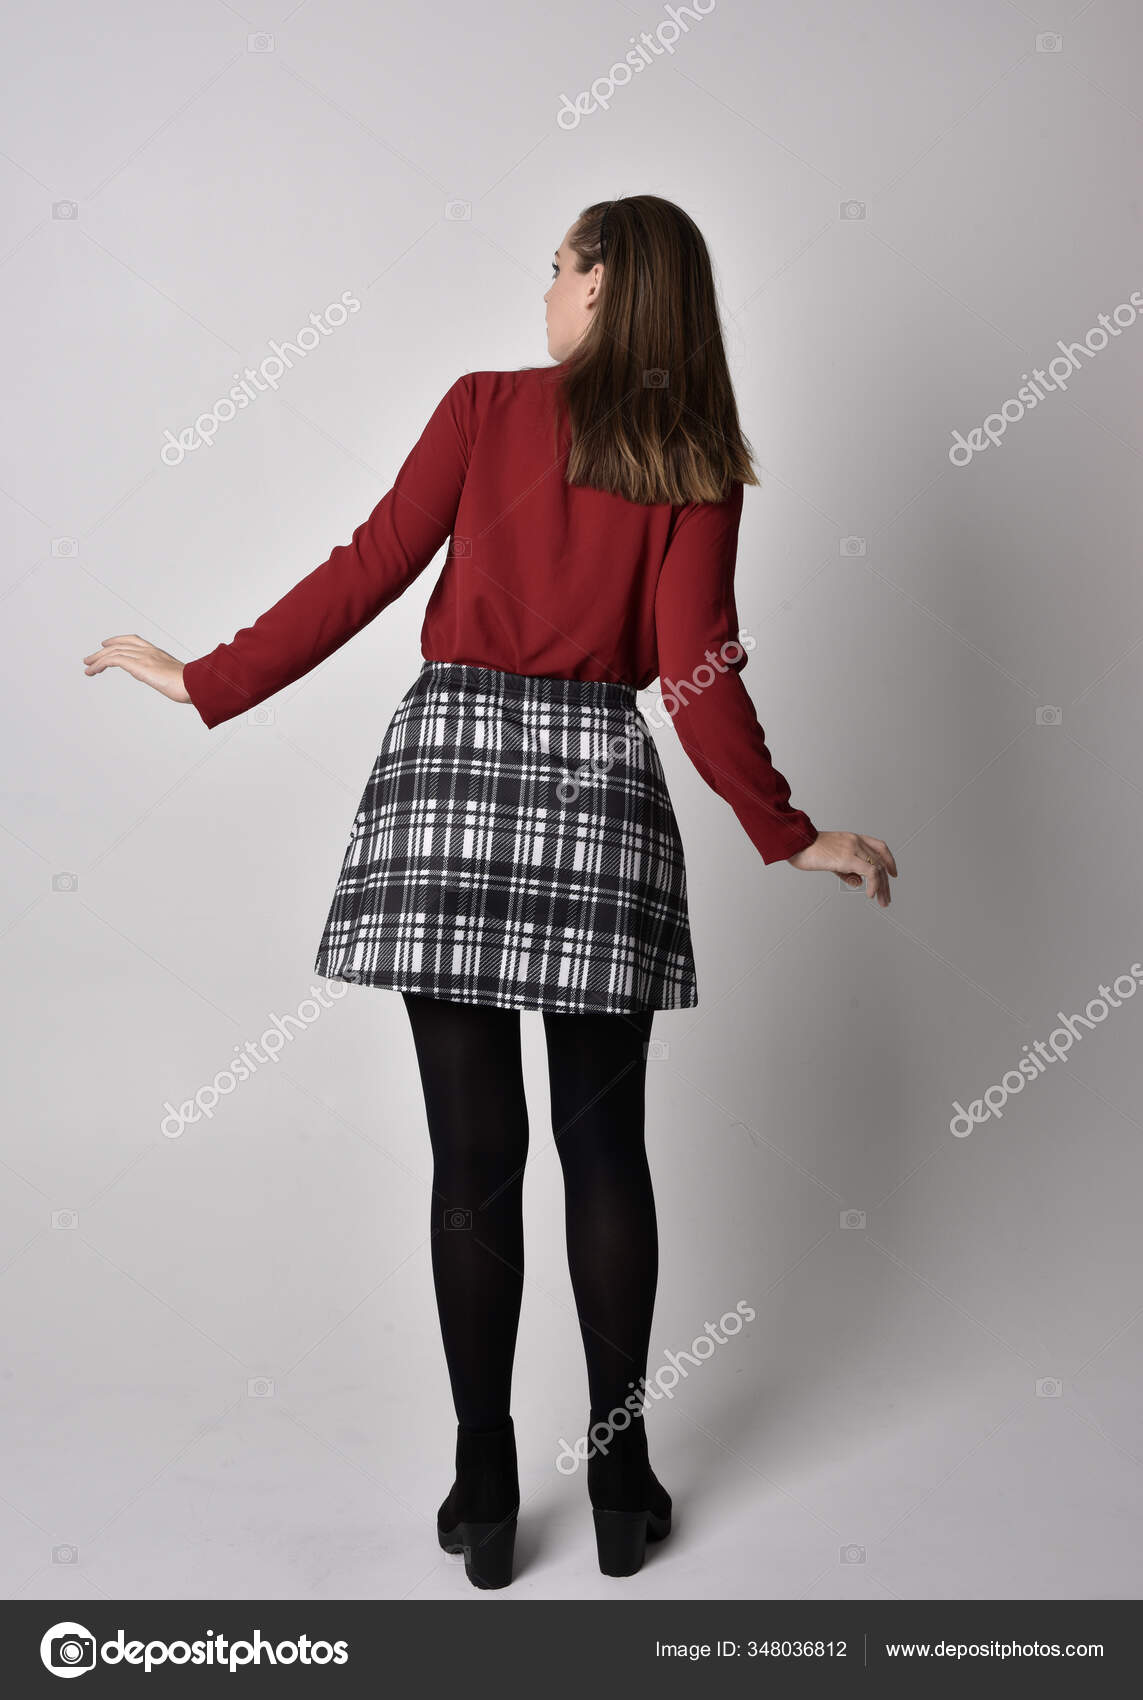 全长肖像一个漂亮的黑发女孩穿着红色衬衫和格子花裙与腿和靴子在摄影棚的背景下面对镜头站立的姿势